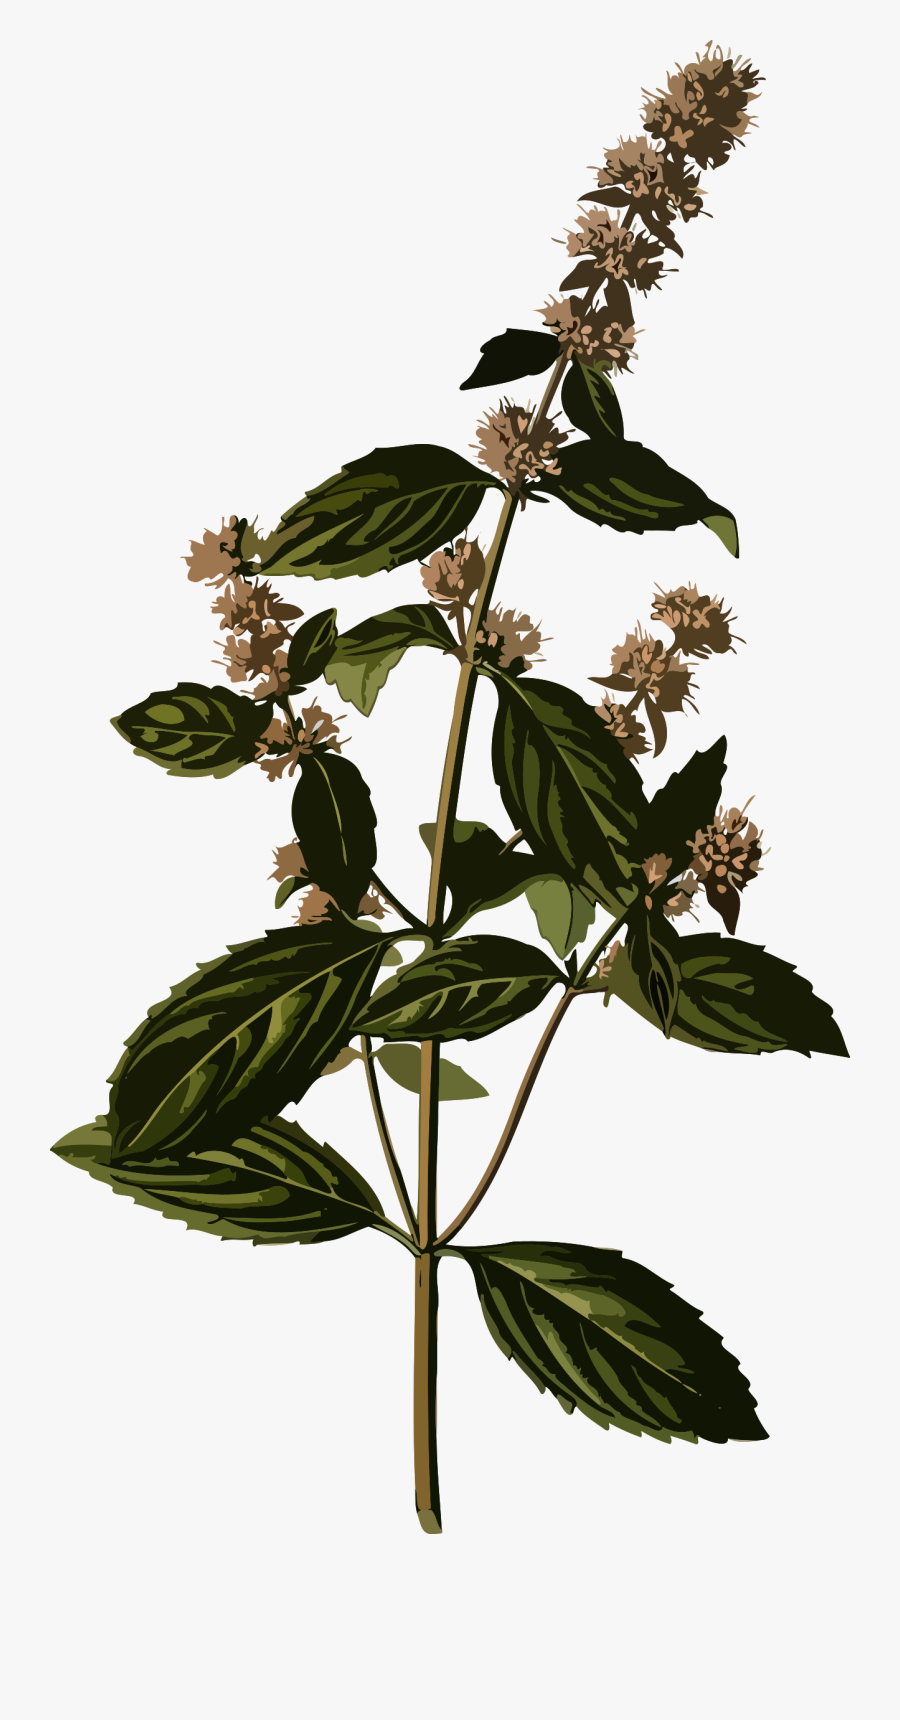 Transparent Peppermint Clipart - Peppermint Botanical Illustration, Transparent Clipart